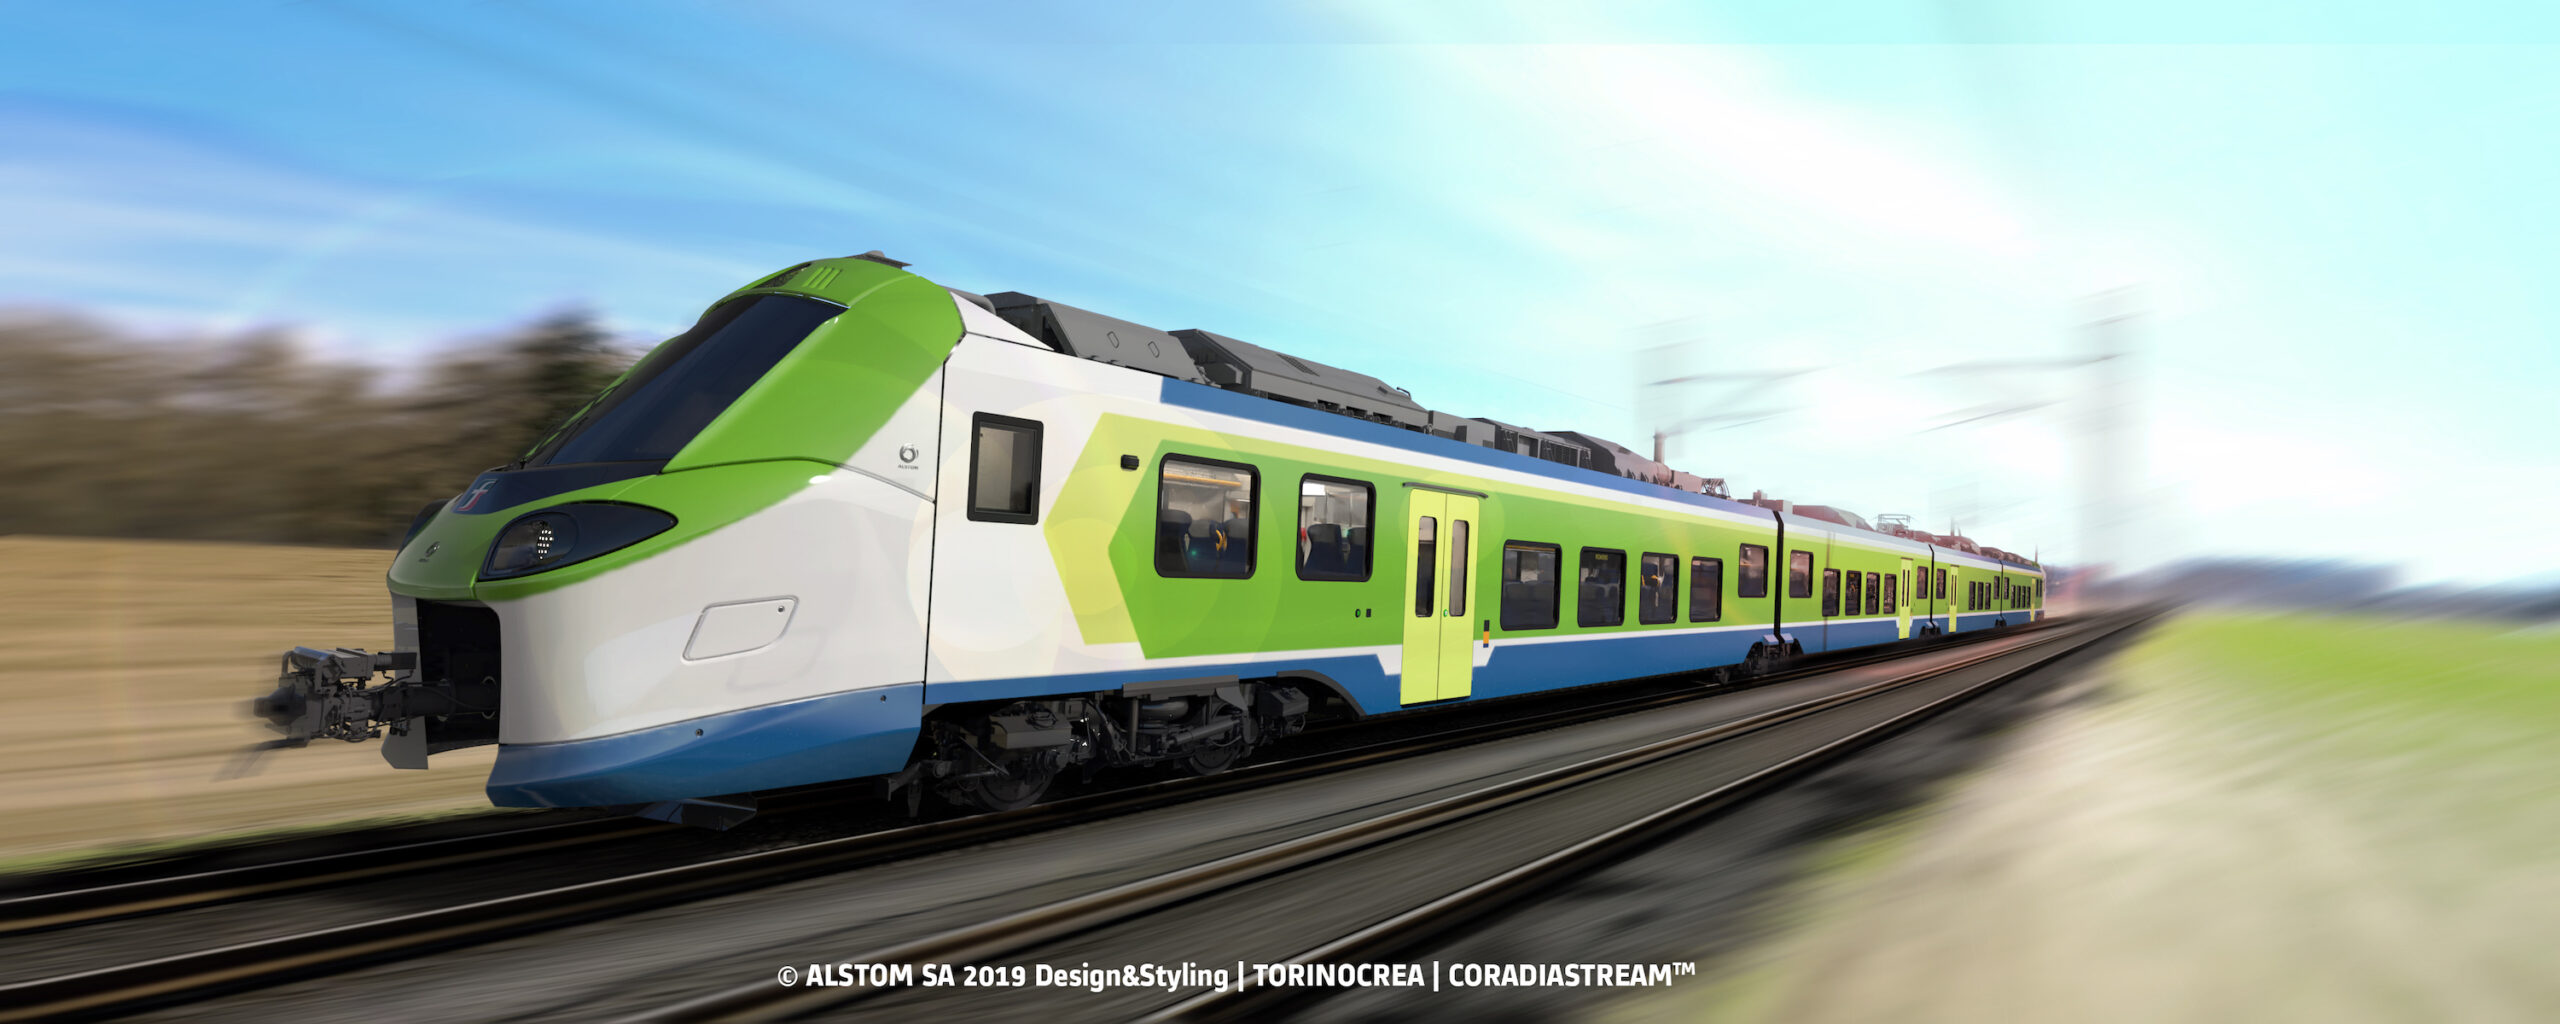 Ferrovienord e Alstom: in arrivo nuovi treni a media capacità per il servizio ferroviario regionale